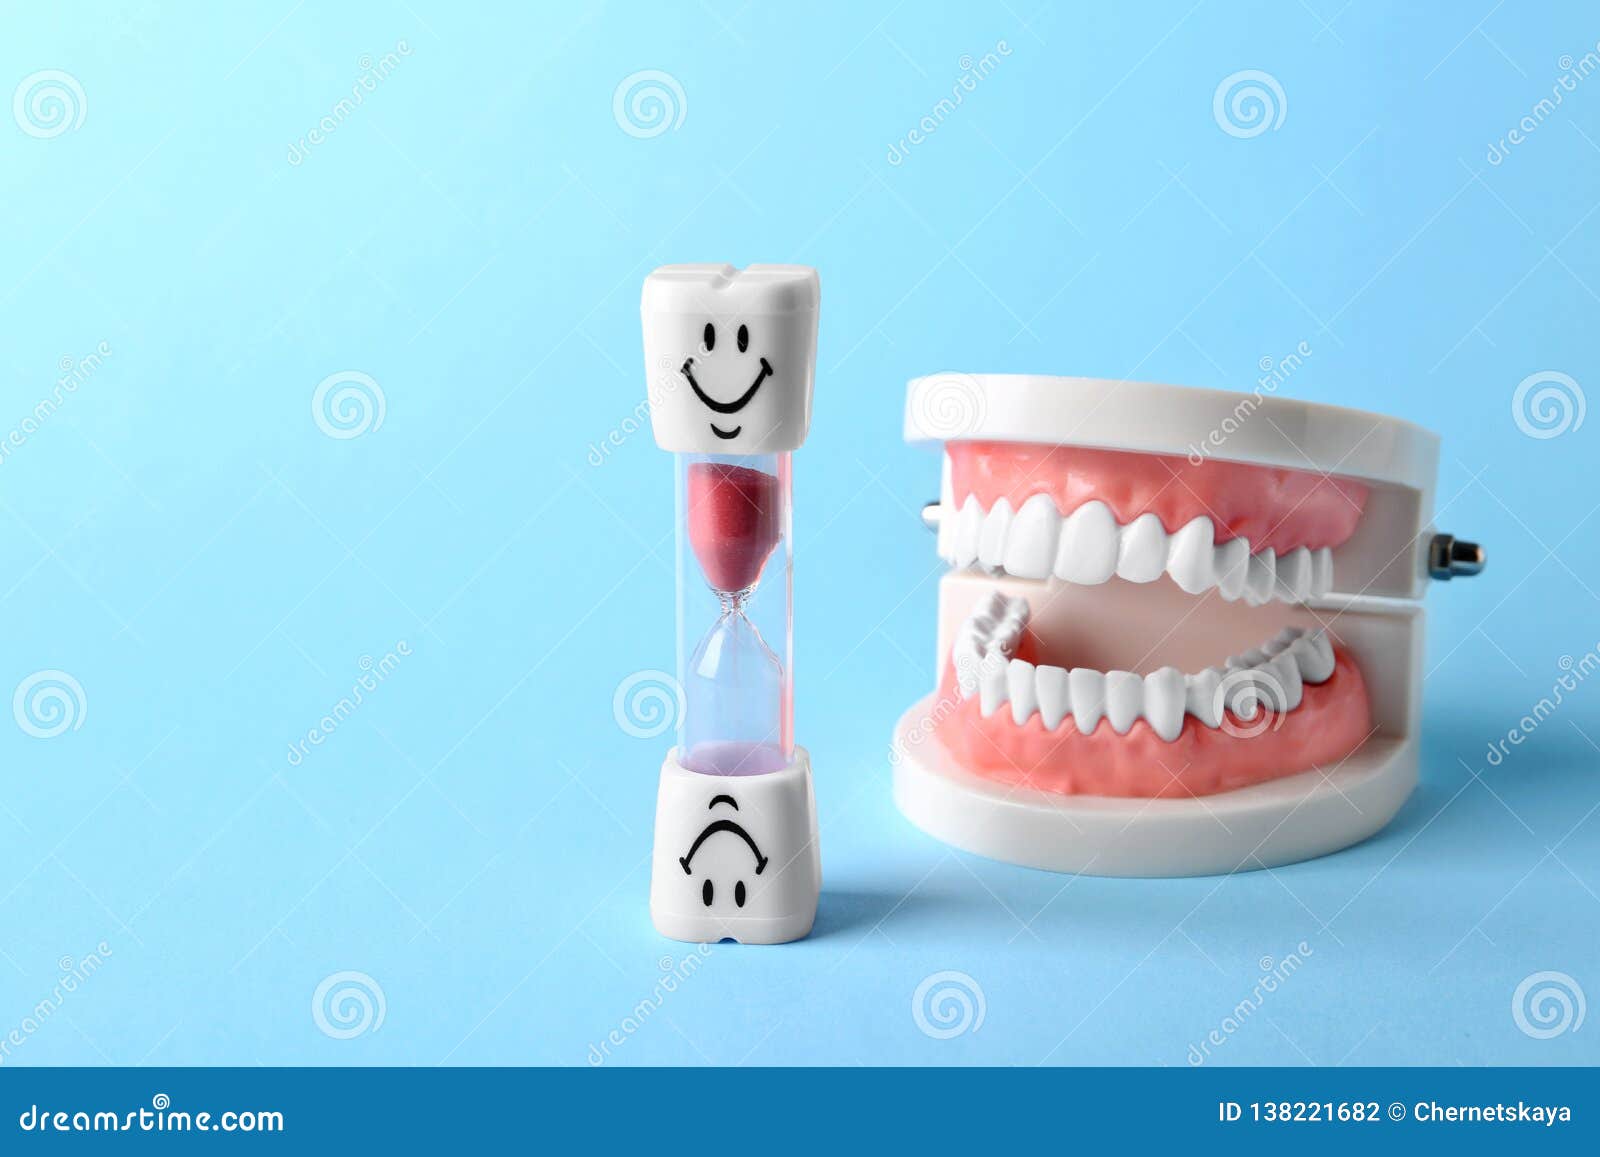 Модель полости рта. Модель челюсти с зубами. Макет челюсть с зубами поделка.